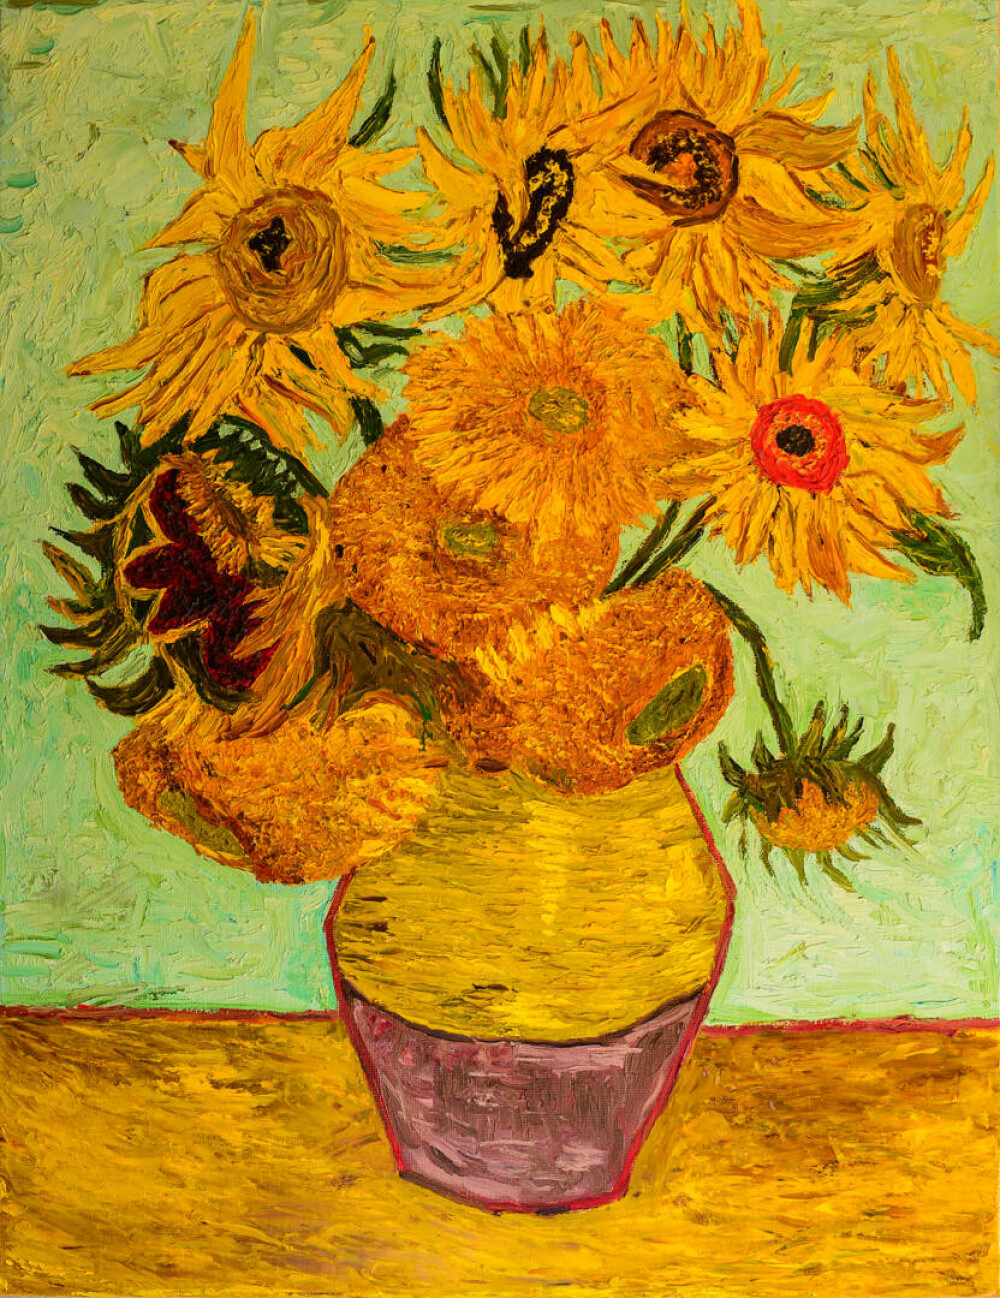 Viața lui Vincent van Gogh. Curiozități despre unul dintre cei mai mari pictori din toate timpurile - Imaginea 4